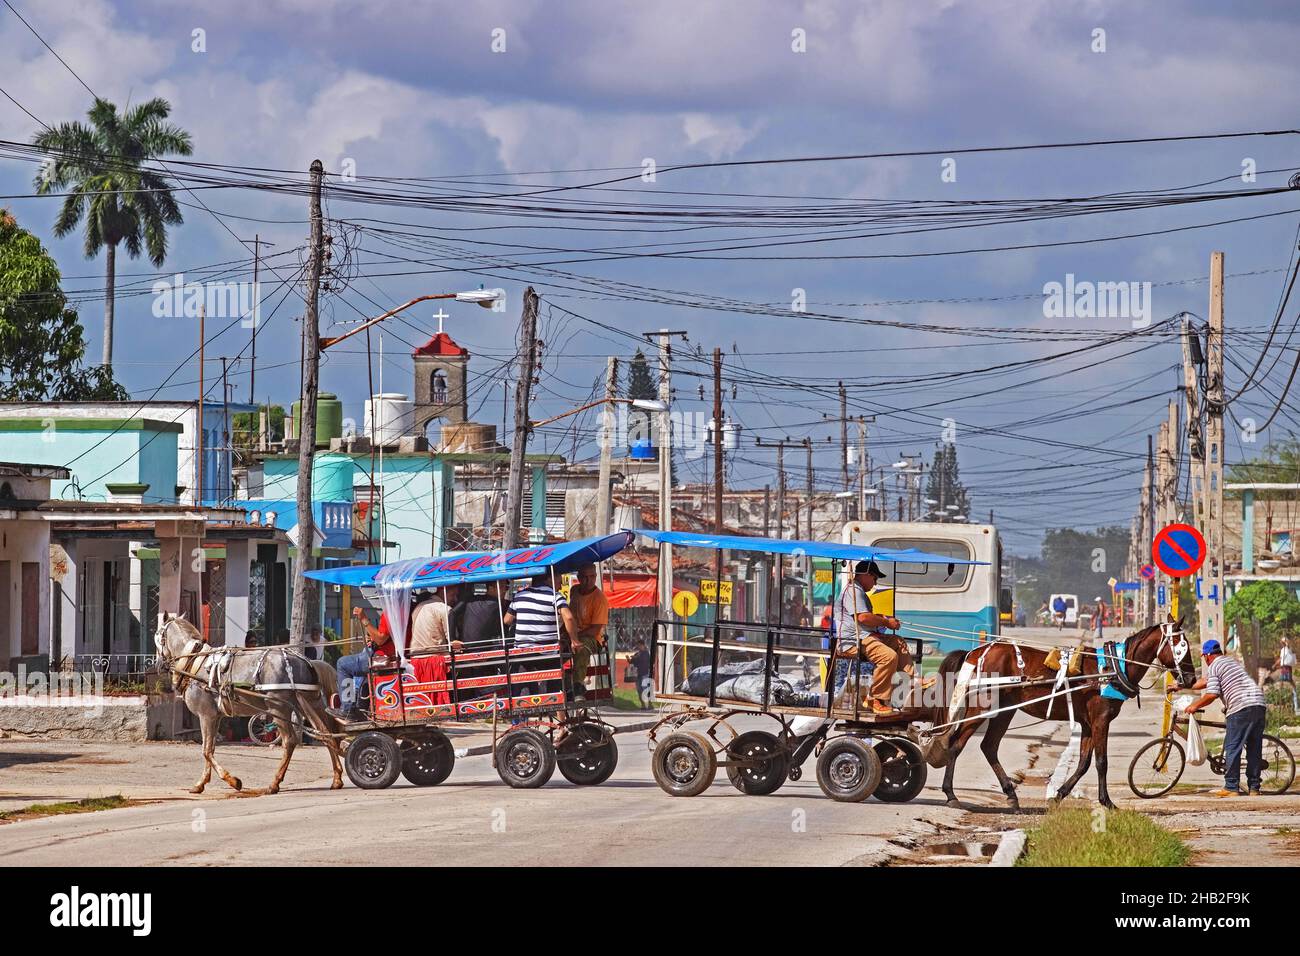 Calèche avec passagers et cheval avec route de passage à chariots dans la ville de Jatibonico, province de Sancti Spíritus sur l'île de Cuba, Caraïbes Banque D'Images